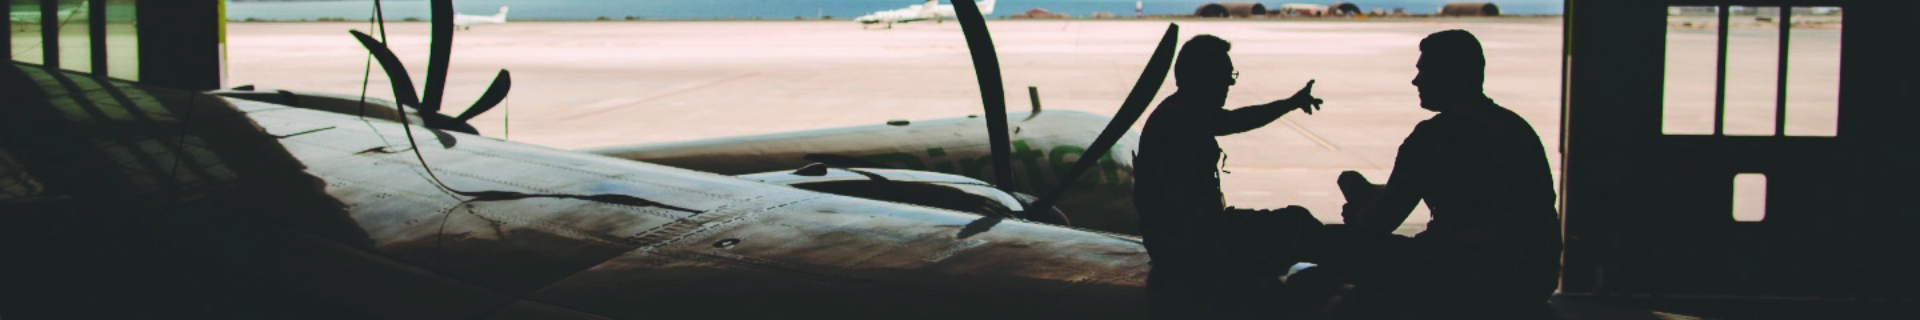 Immagine in controluce di due operai e di un ATR nell'hangar di Binter